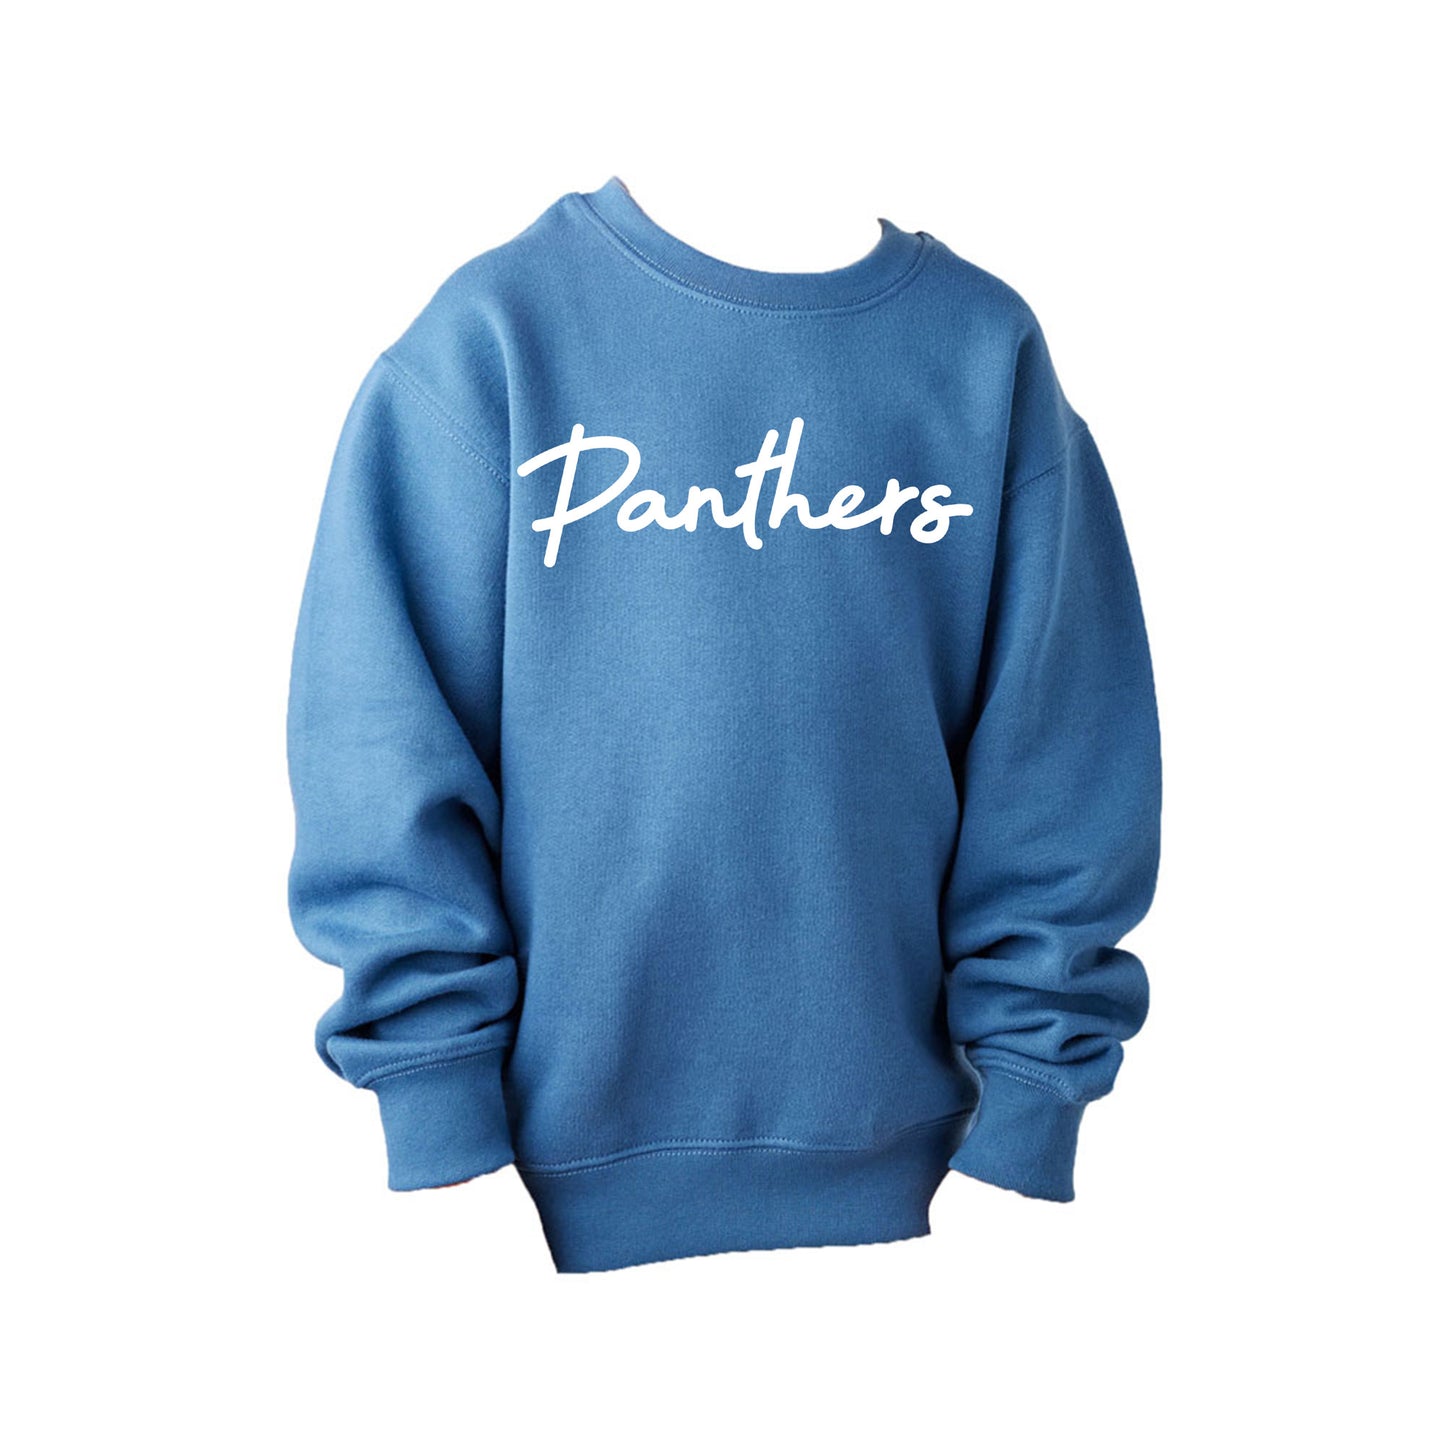 stellar blue crewneck youth sweatshirt